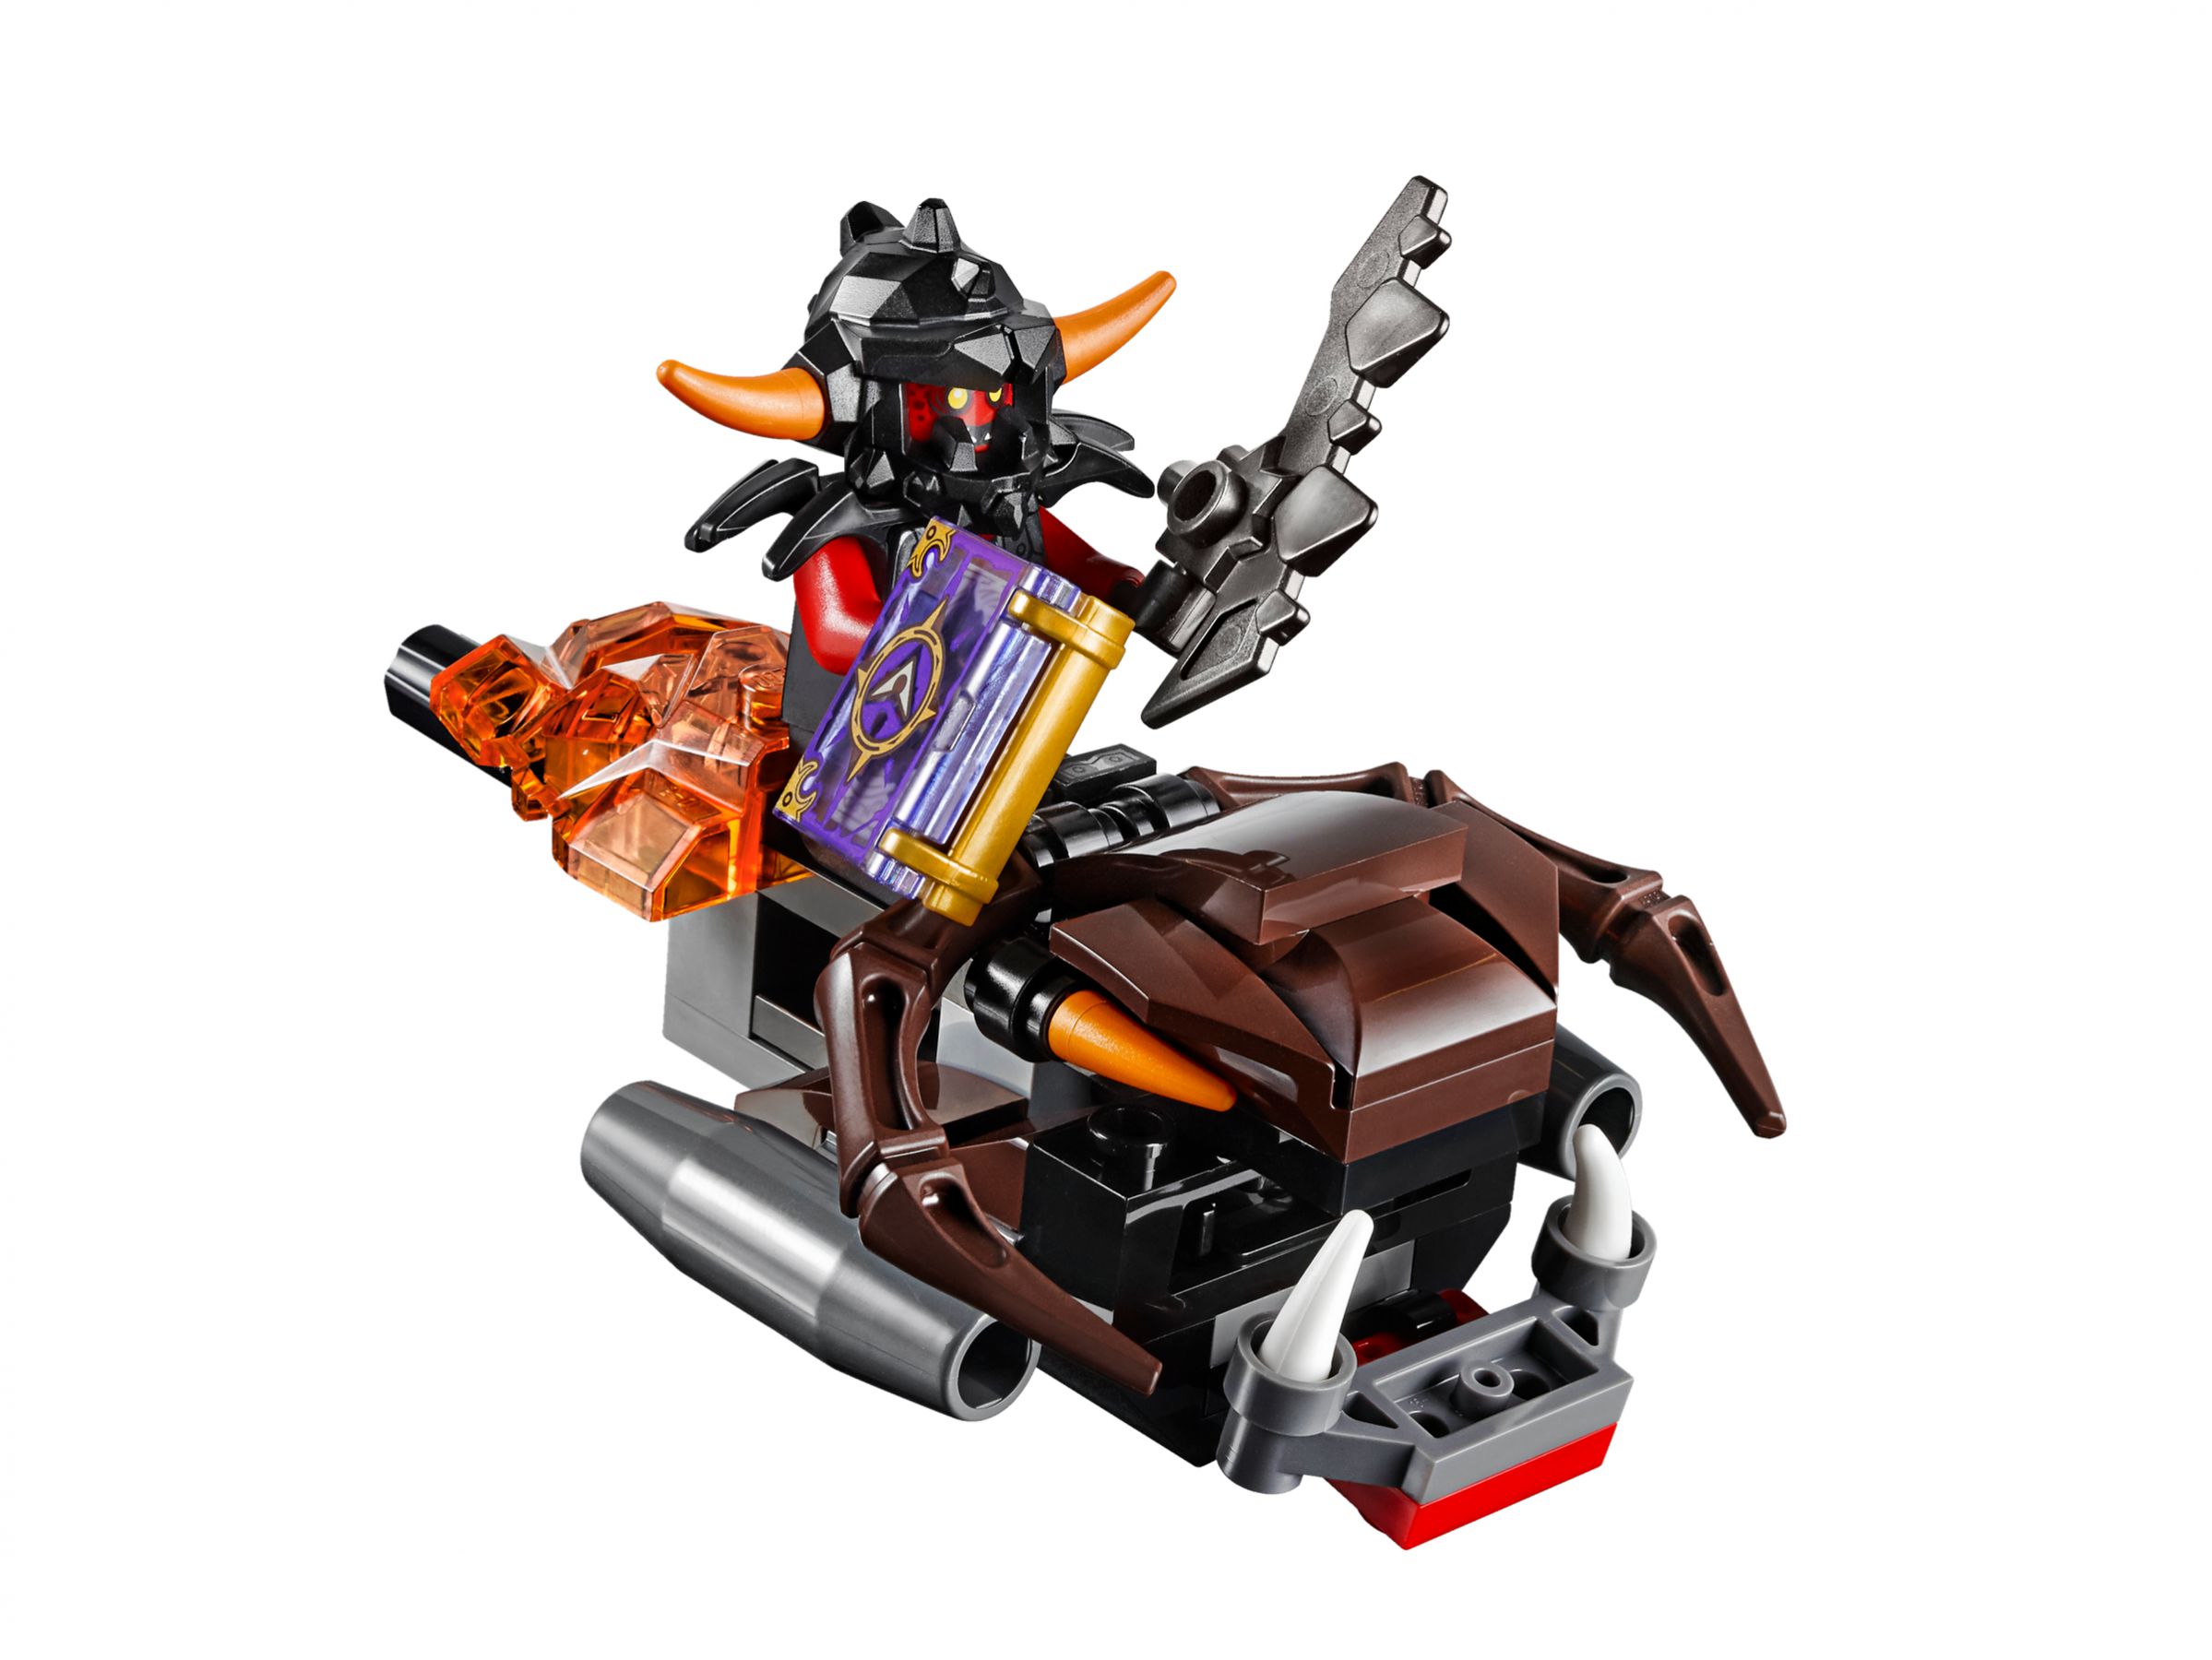 LEGO Nexo Knights 70317 Fortrex – Die rollende Festung LEGO_70317_alt6.jpg